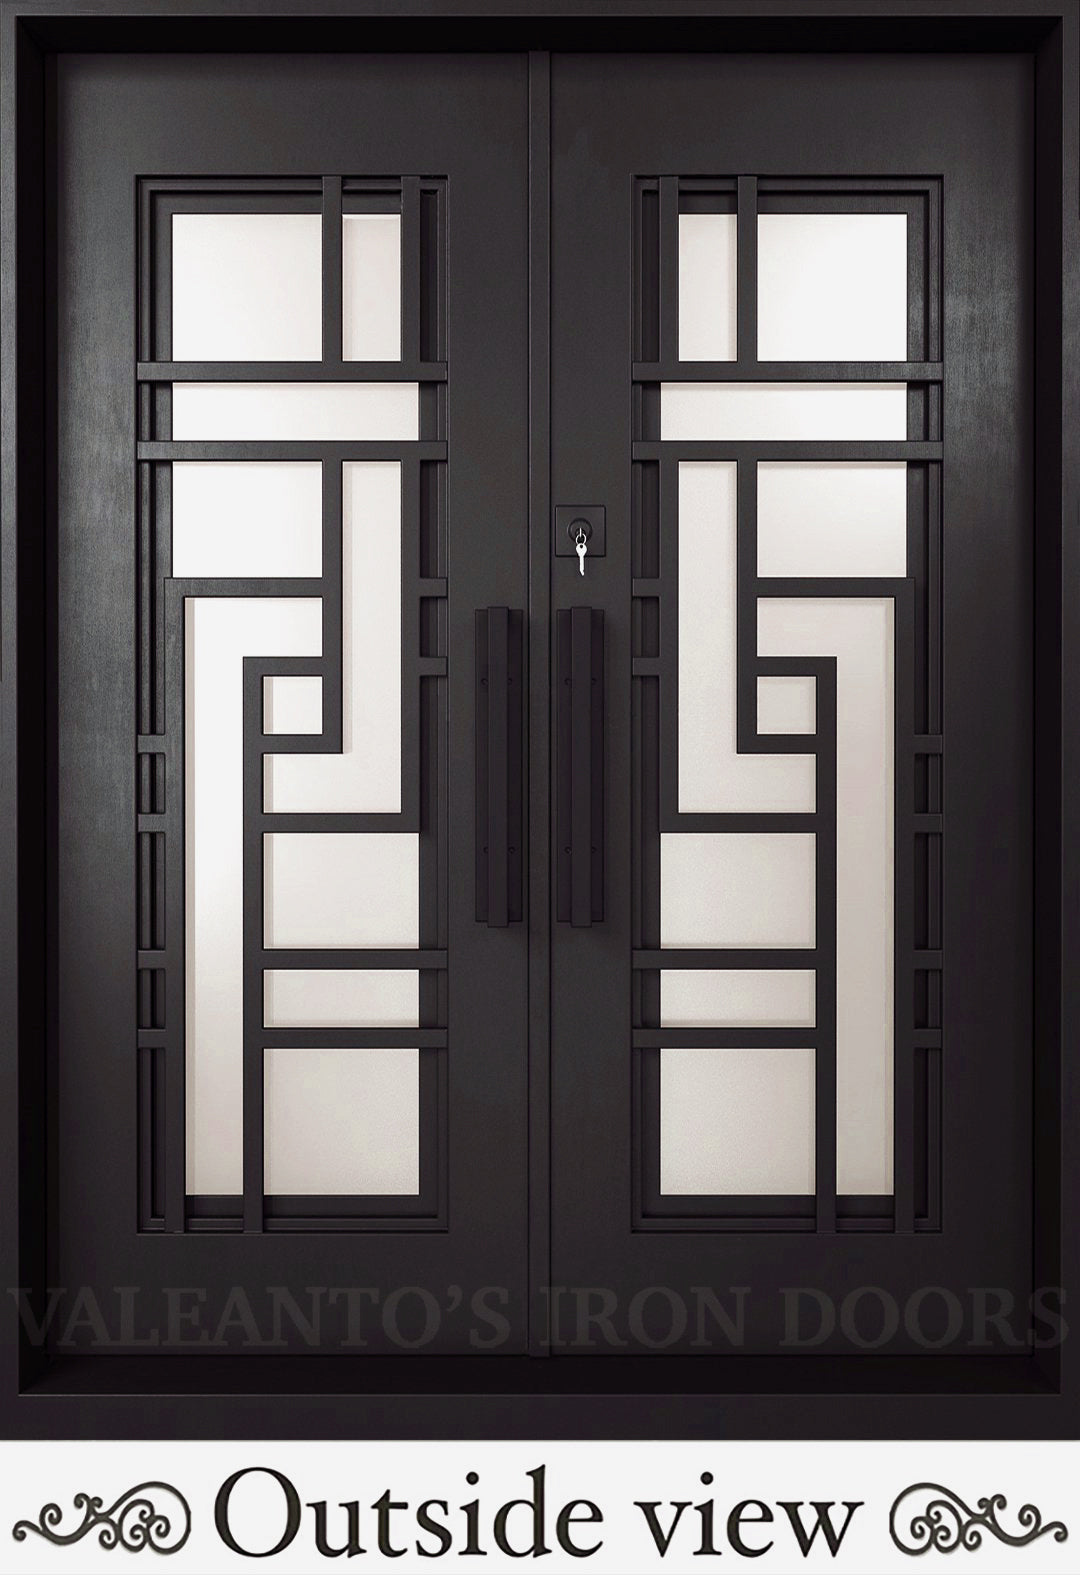 MODERNA | Iron Door Design For Home | Valeanto's Iron Door